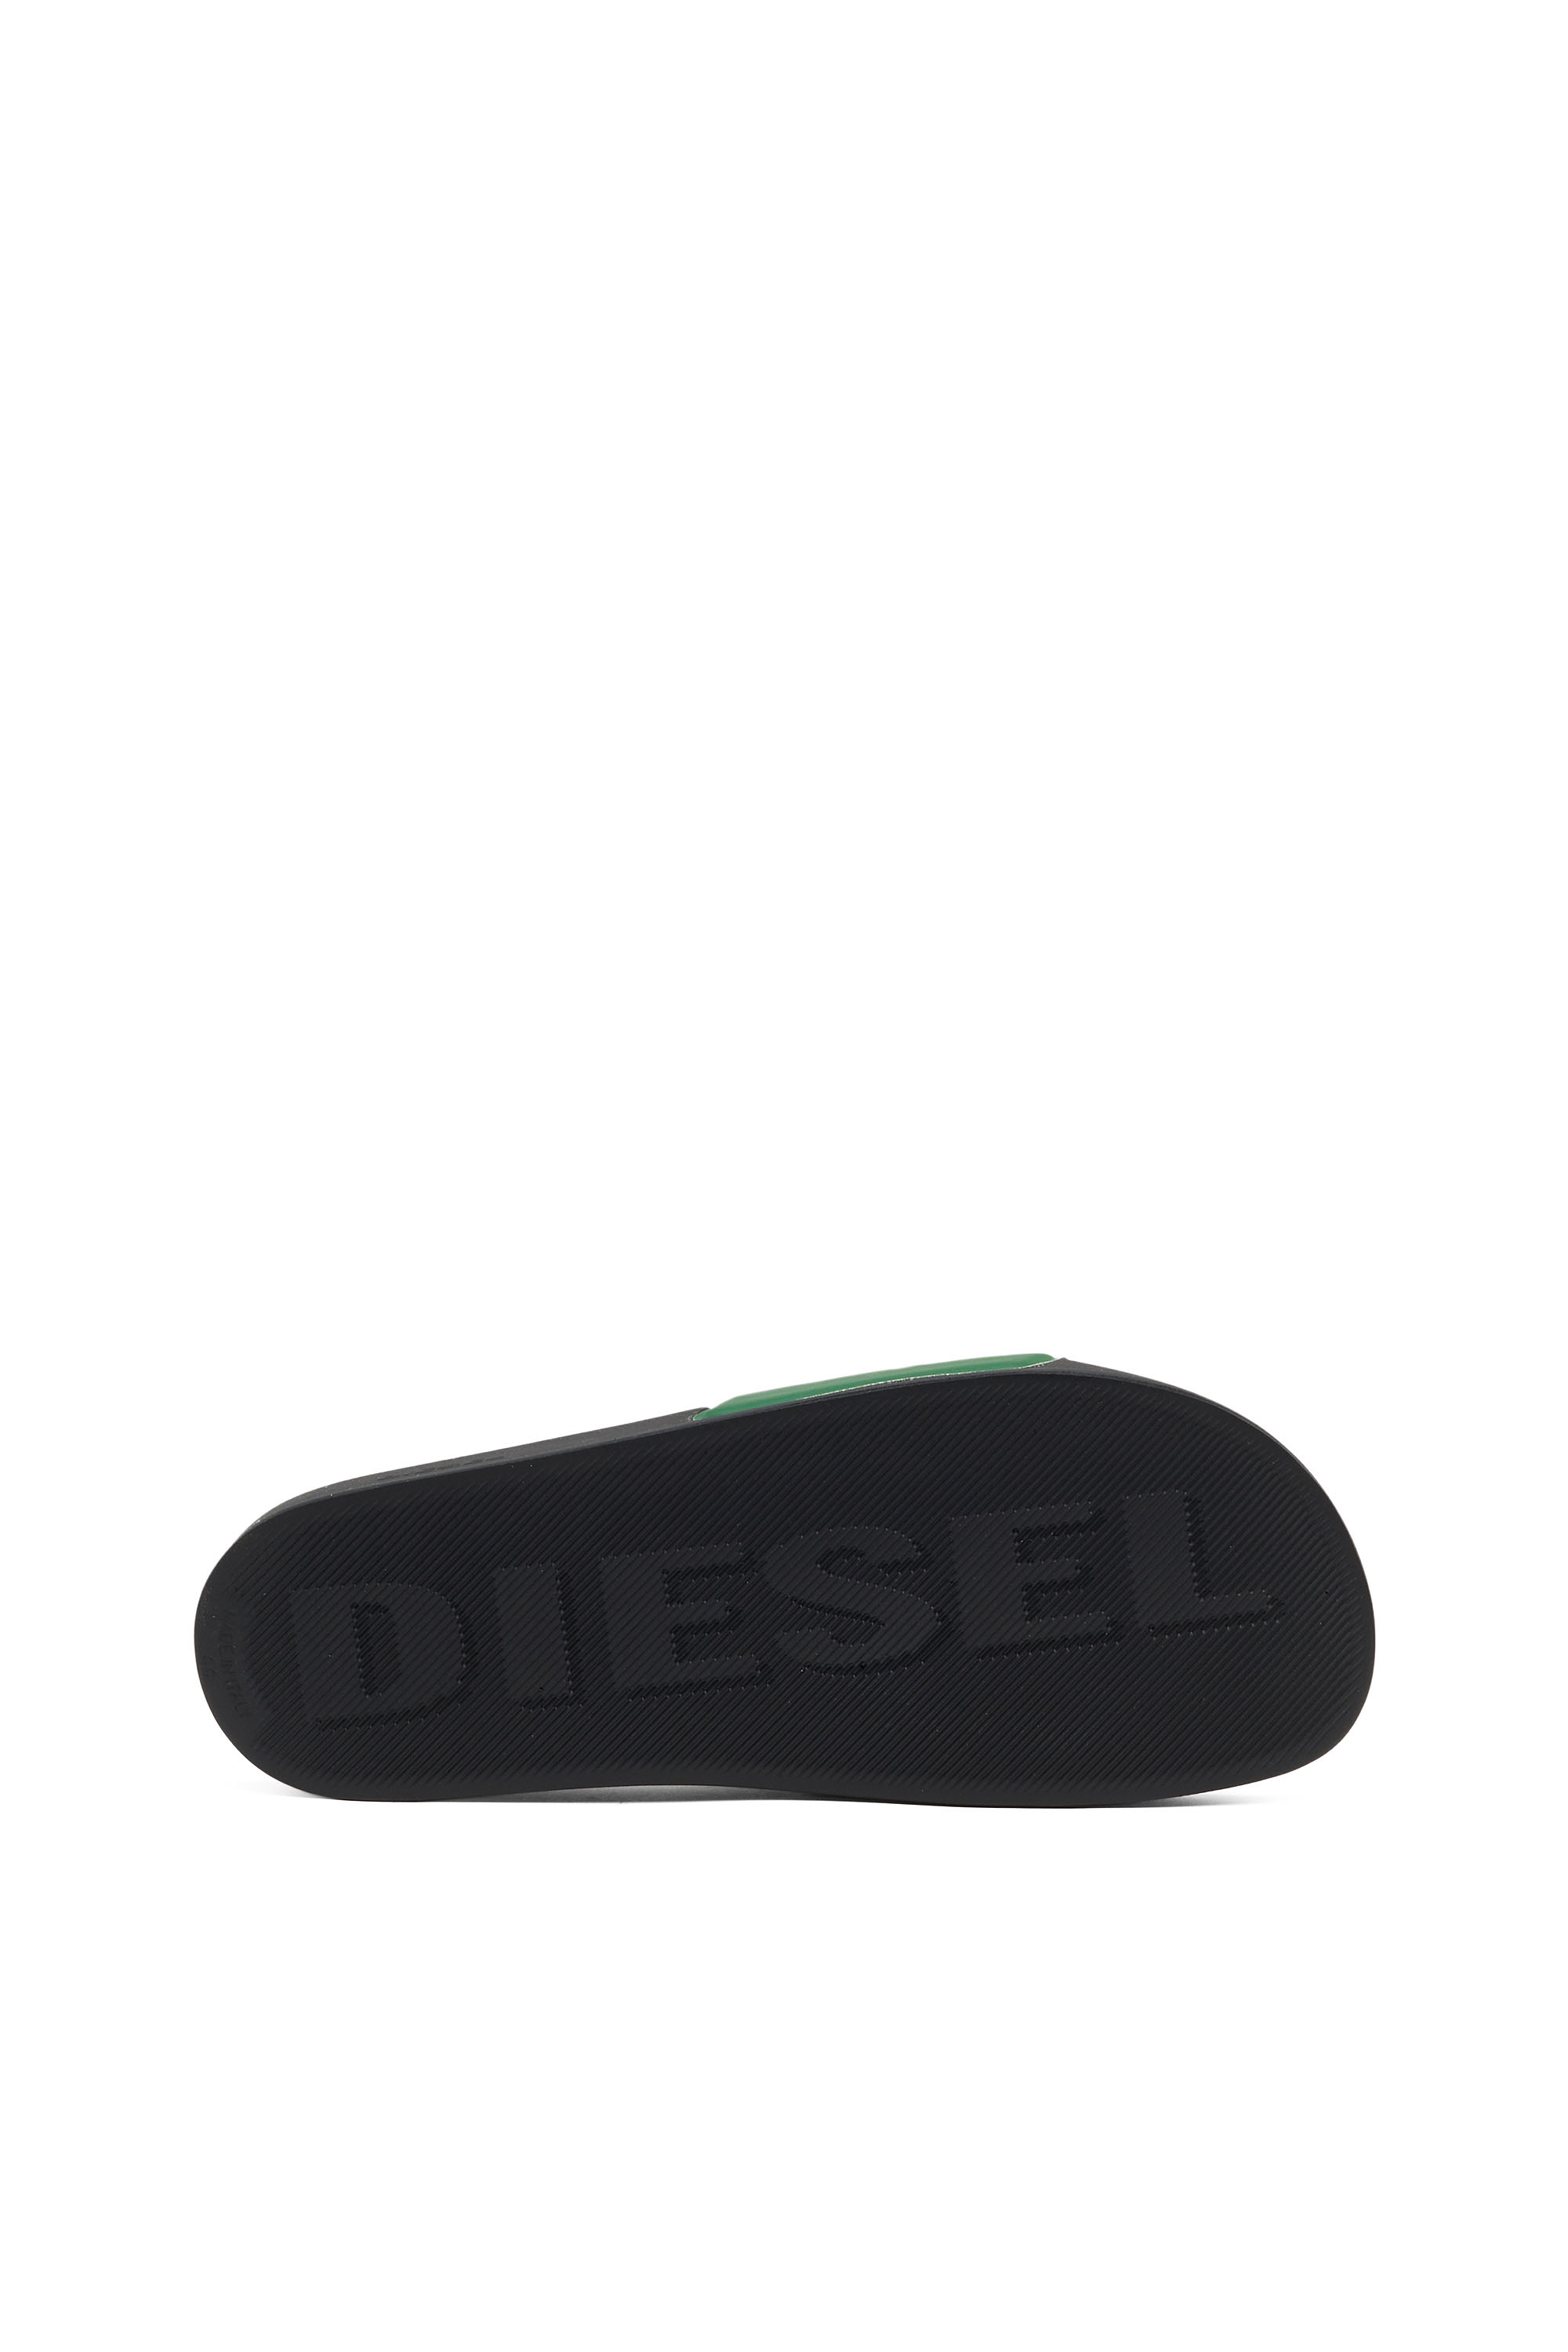 Diesel - SA-MAYEMI D, Vert - Image 4